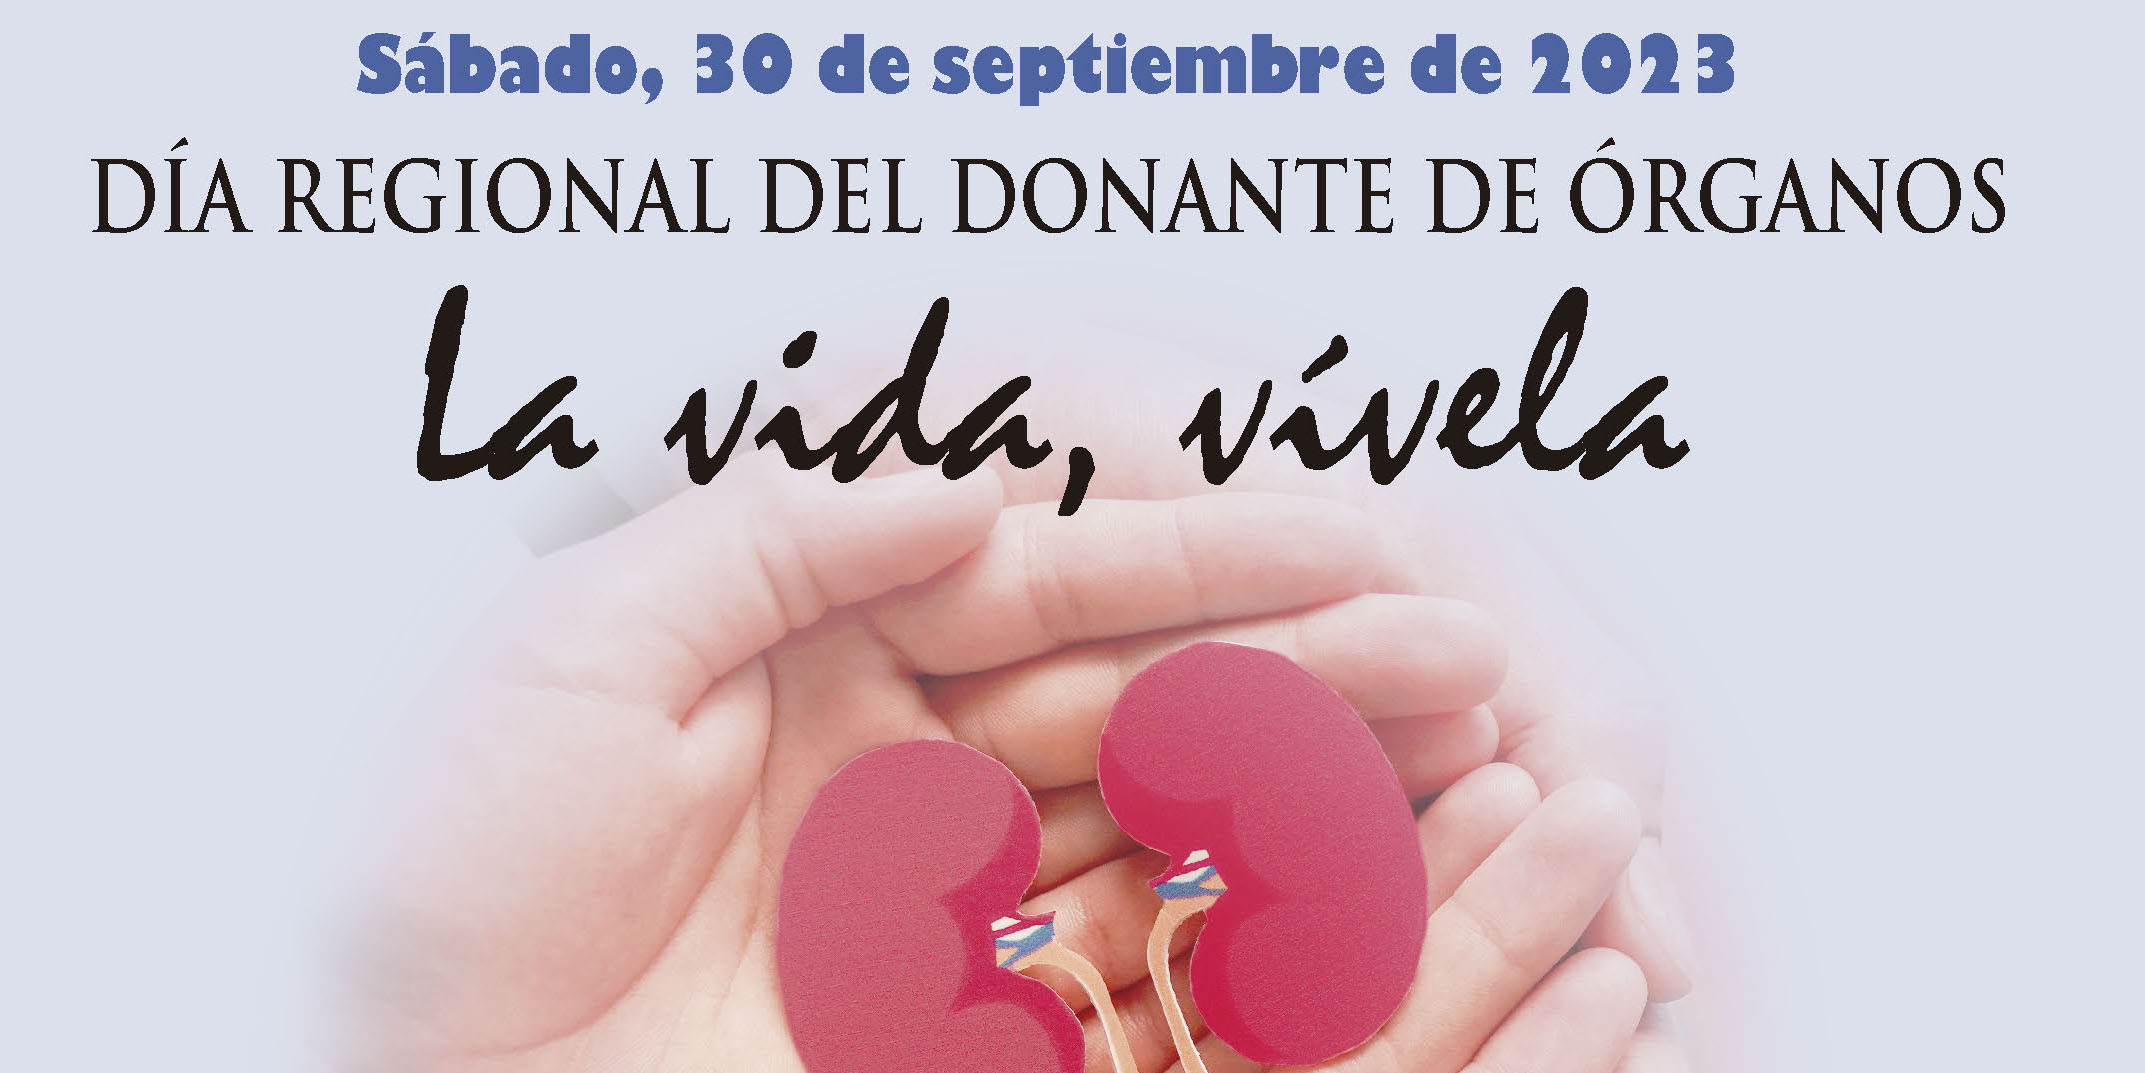 Cartel de Día Regional del Donante de Órganos 2023